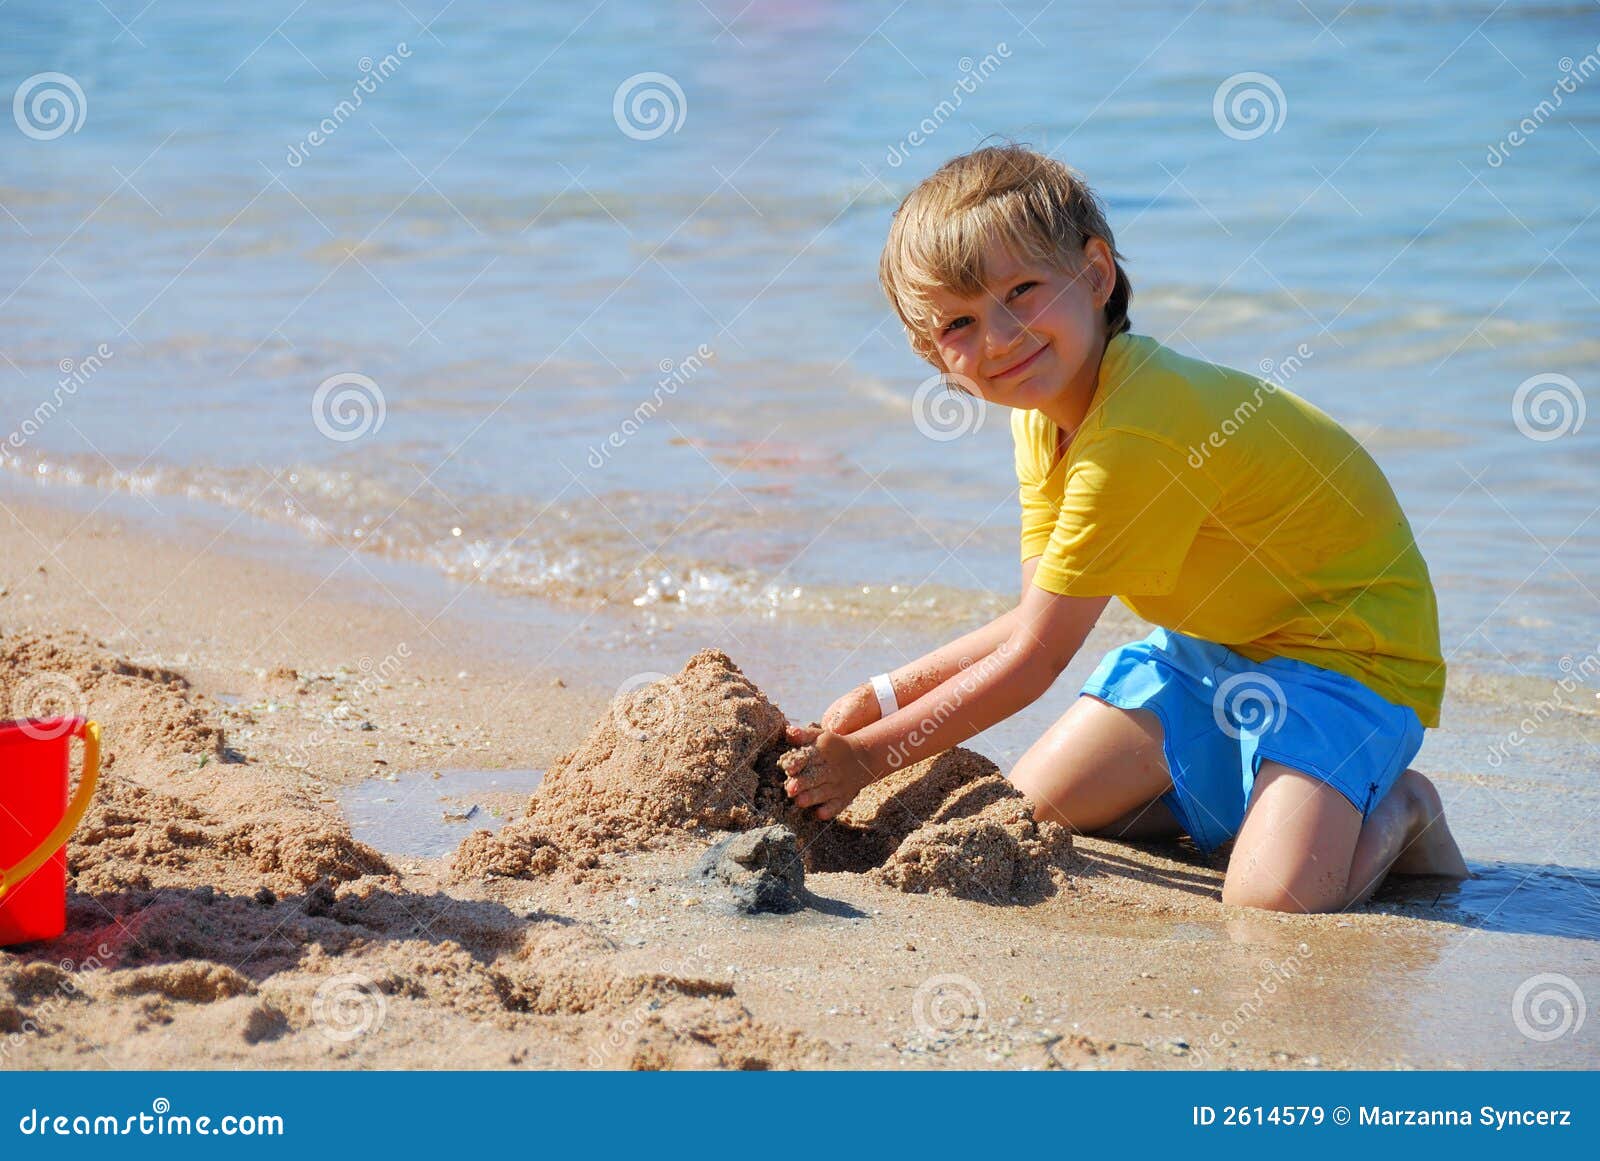 порно маленькие мальчики пляж фото 11